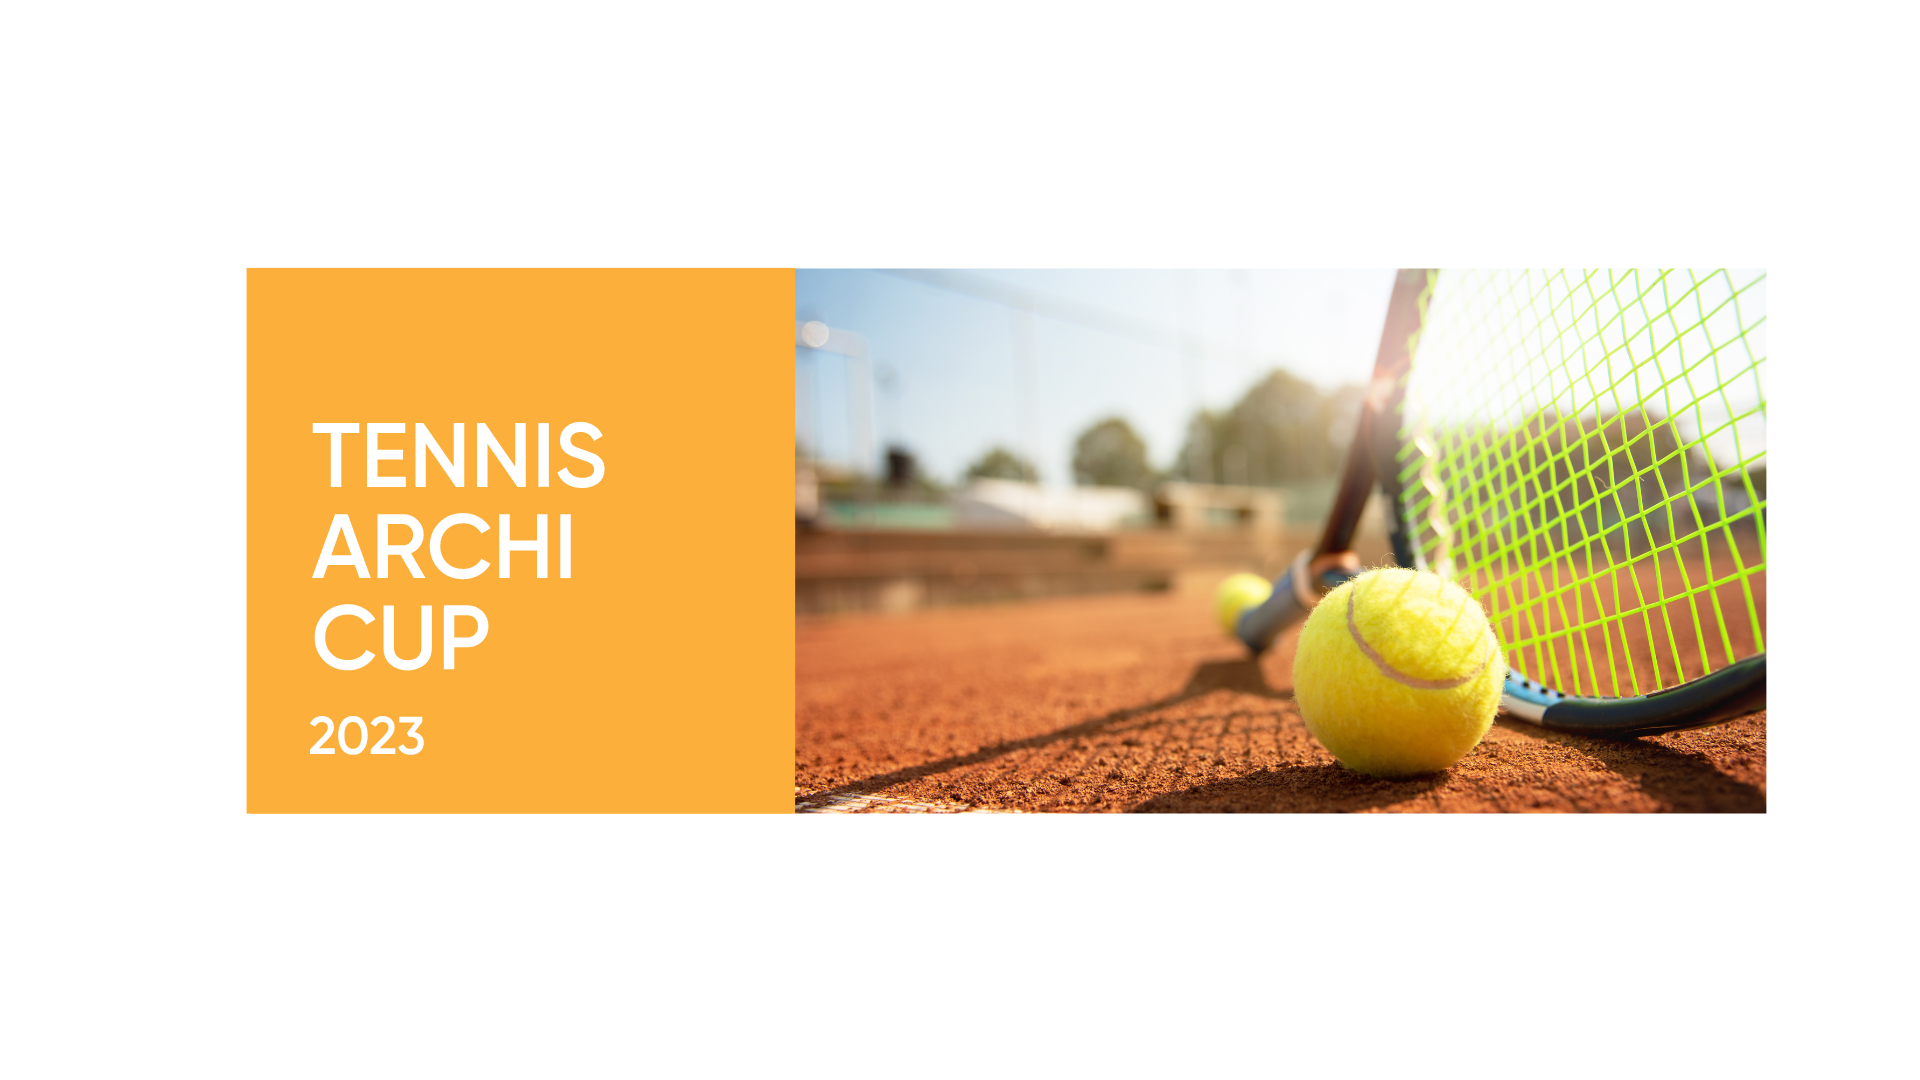 Tennis Archi Cup 2023, zdjęcie w tle